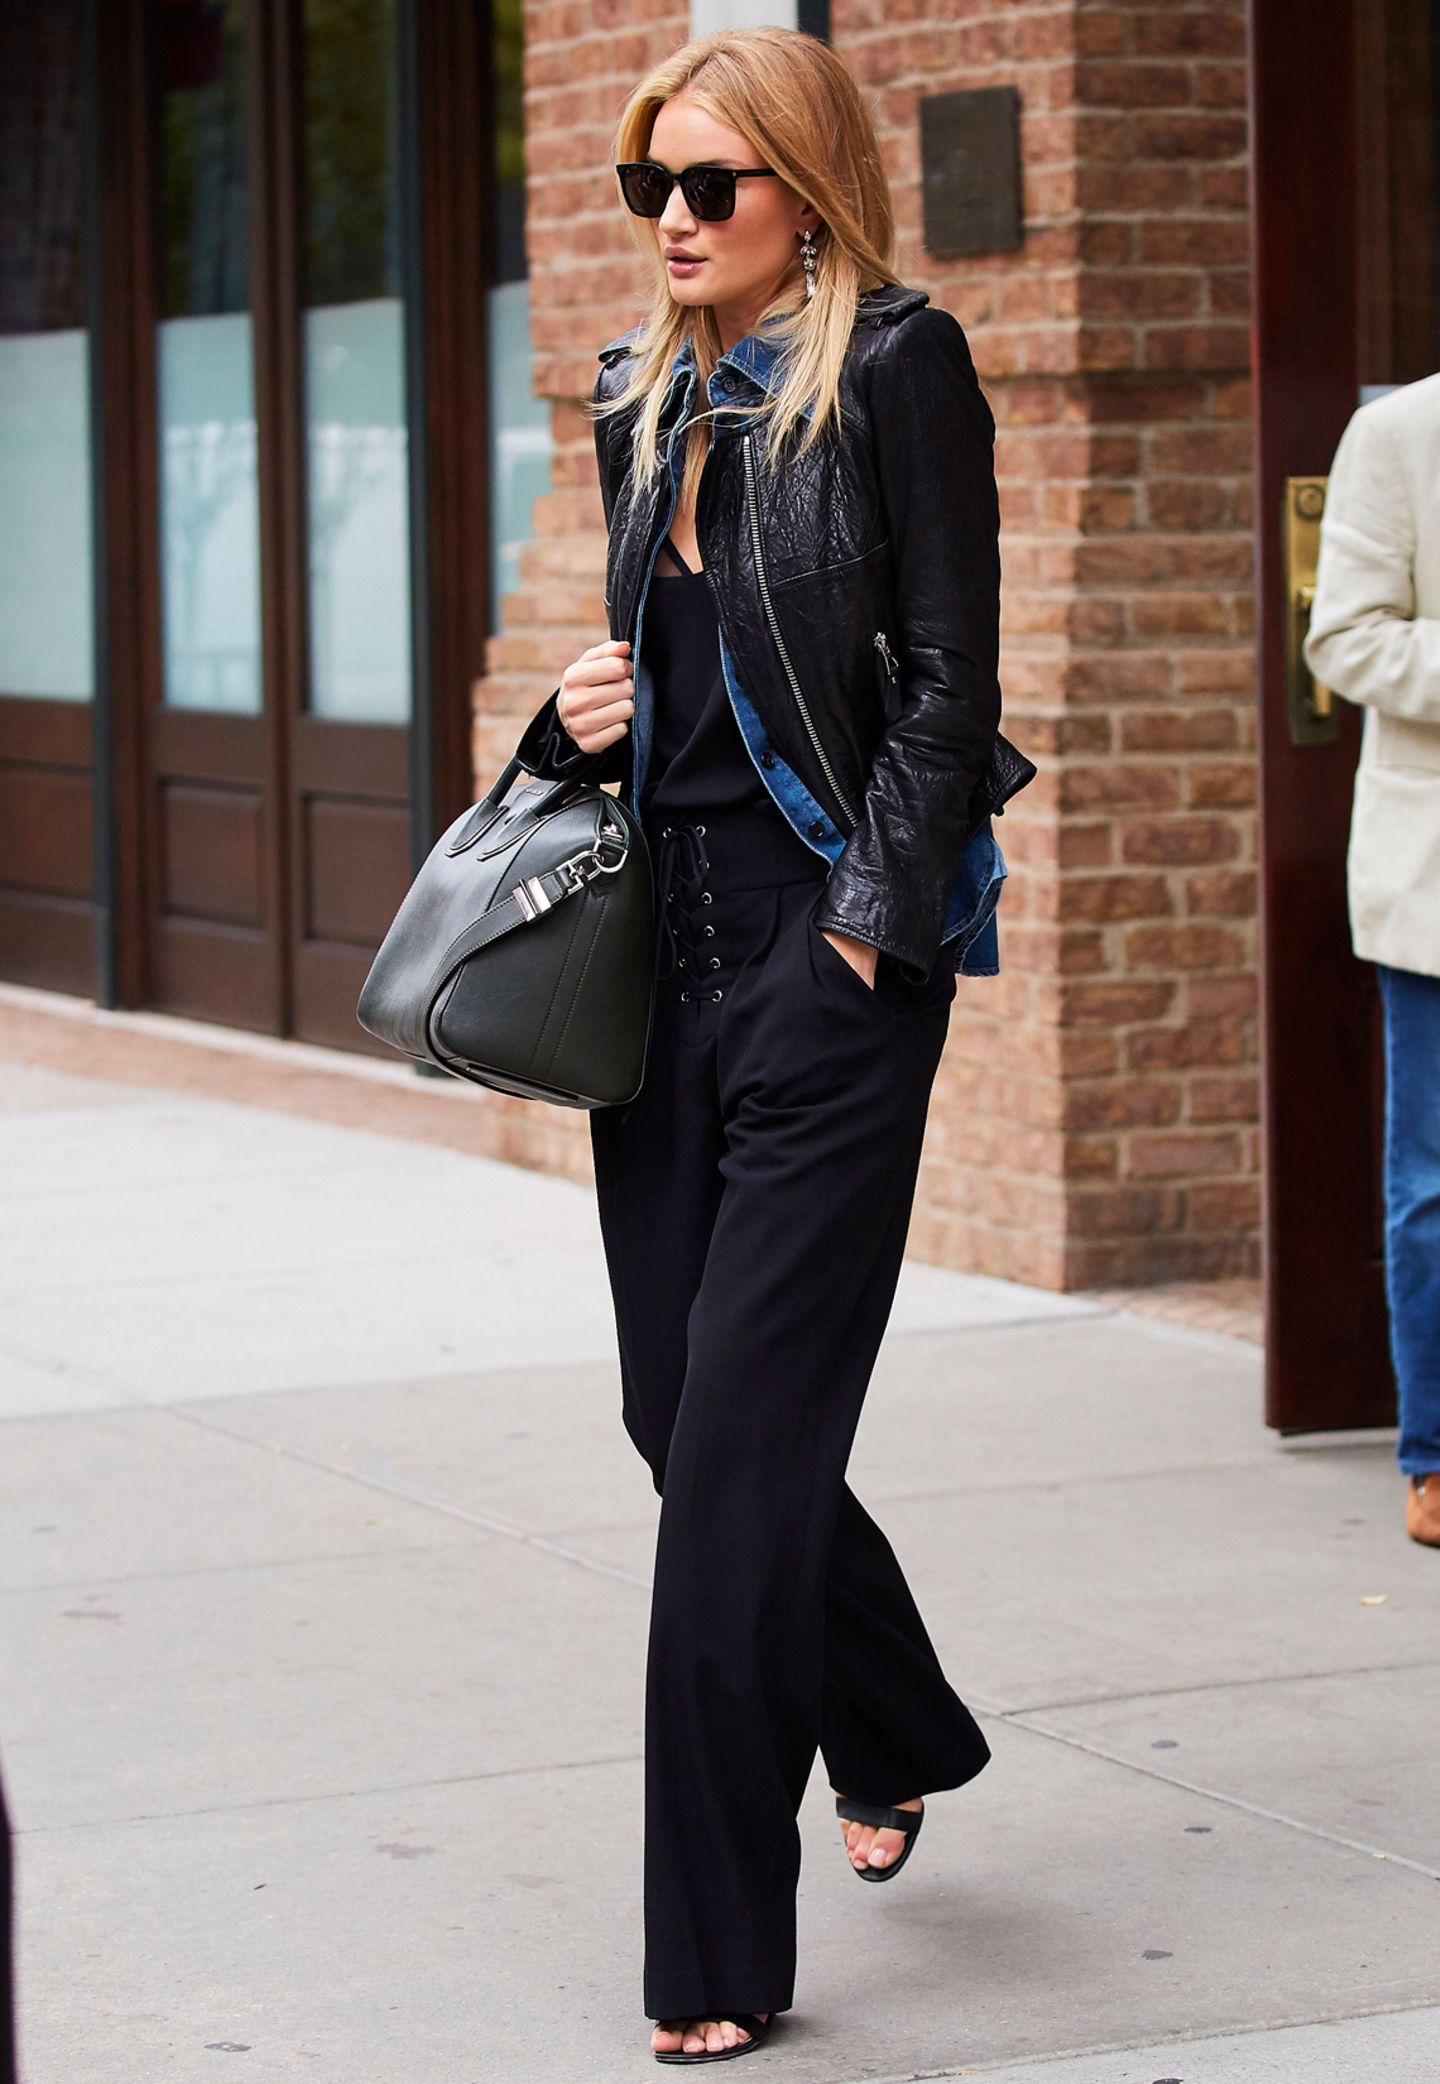 Schauspielerin und Model Rosie Huntington-Whiteley trotzt der kalten Jahreszeit mit einer stylischen Lederjacke.